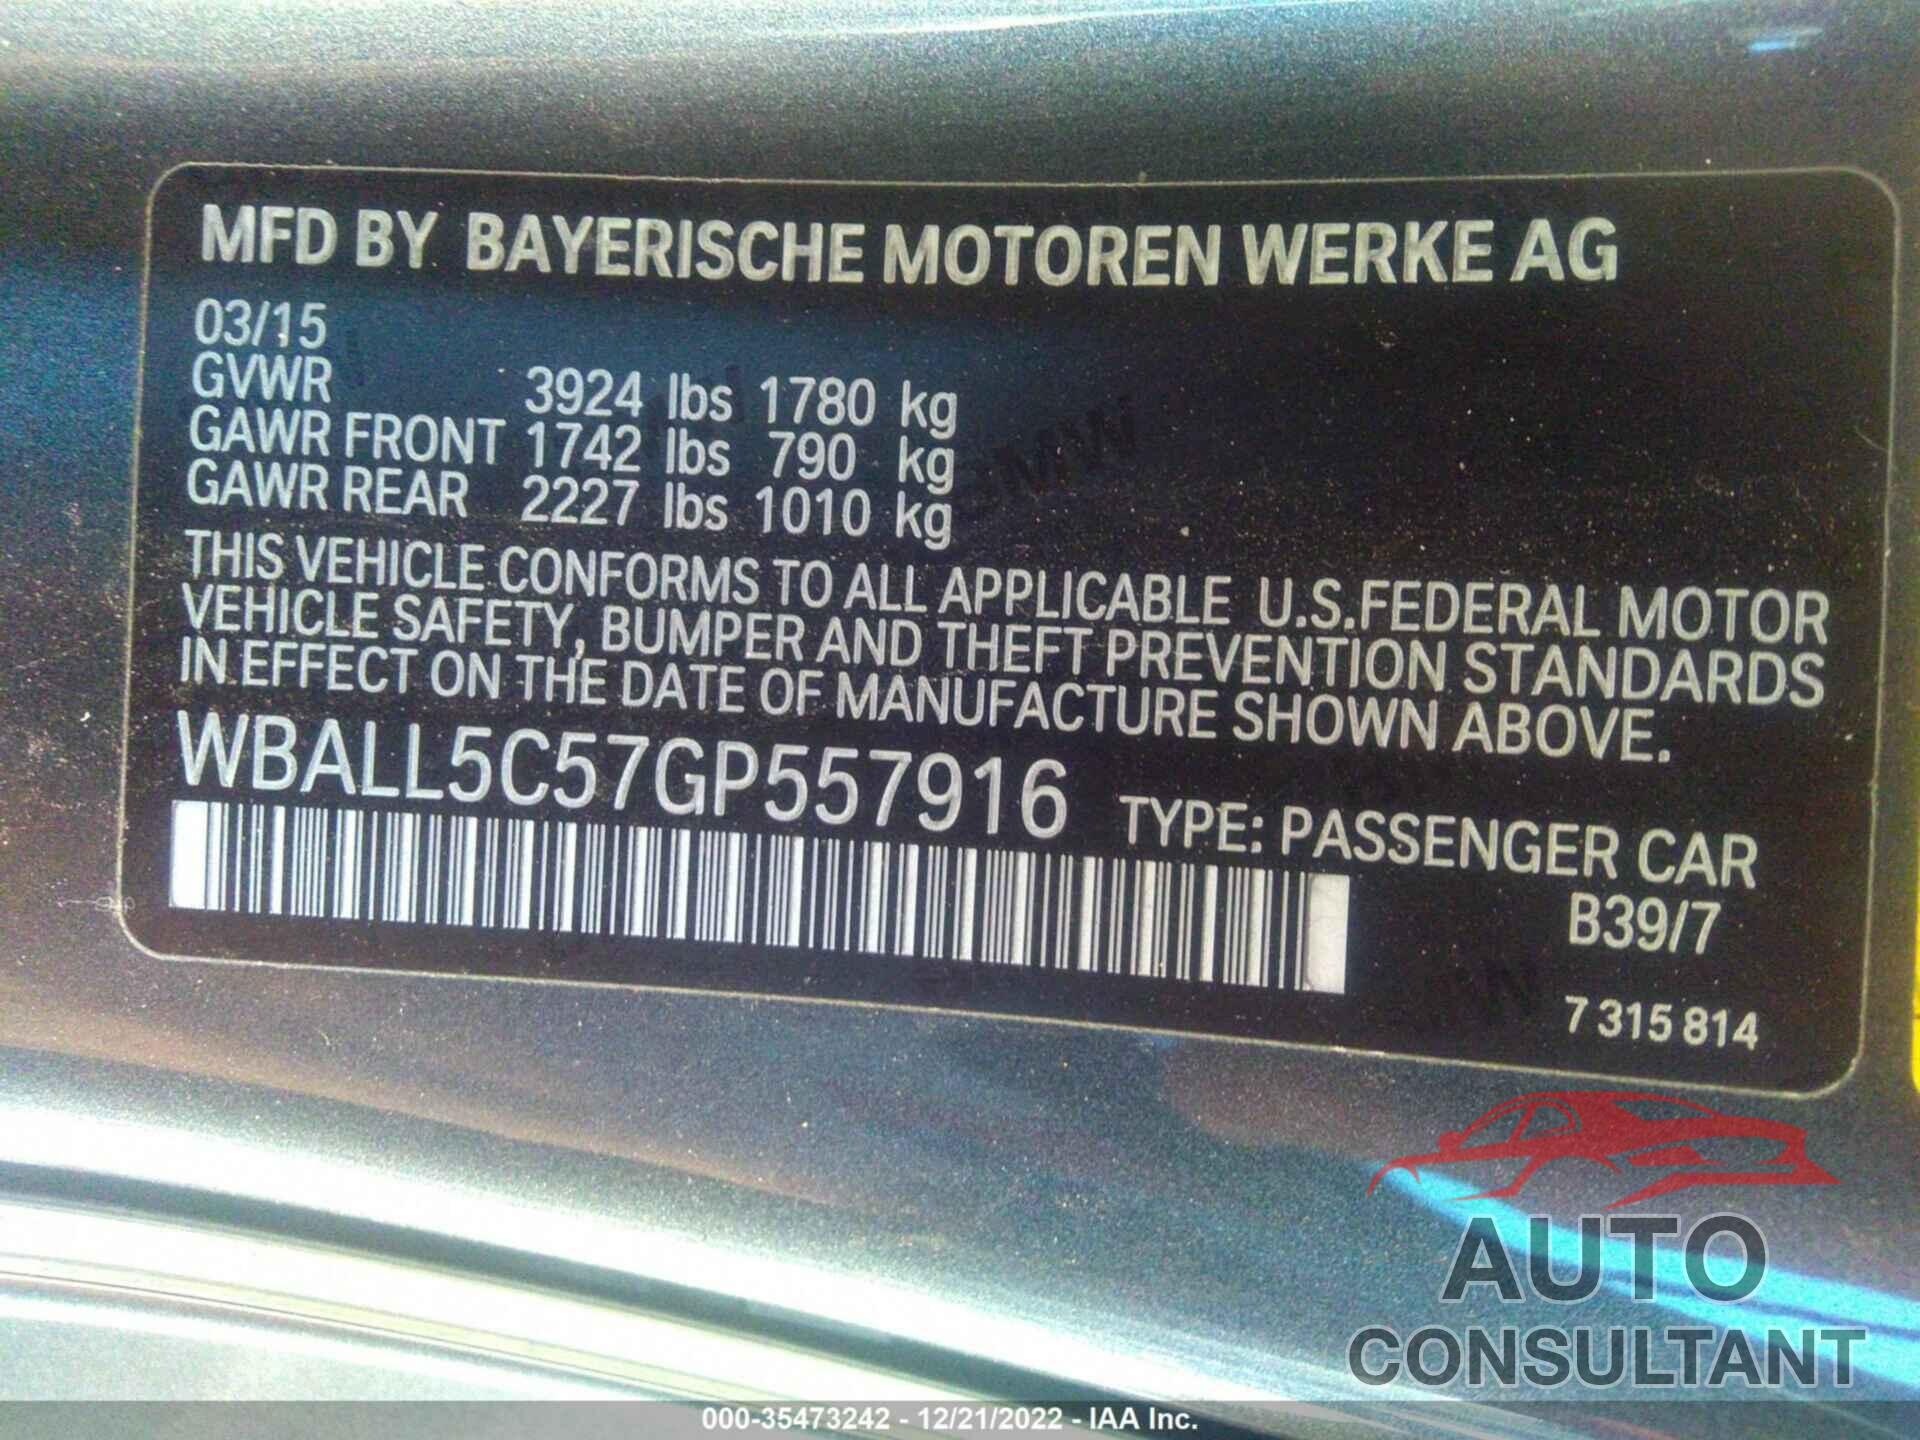 BMW Z4 2016 - WBALL5C57GP557916